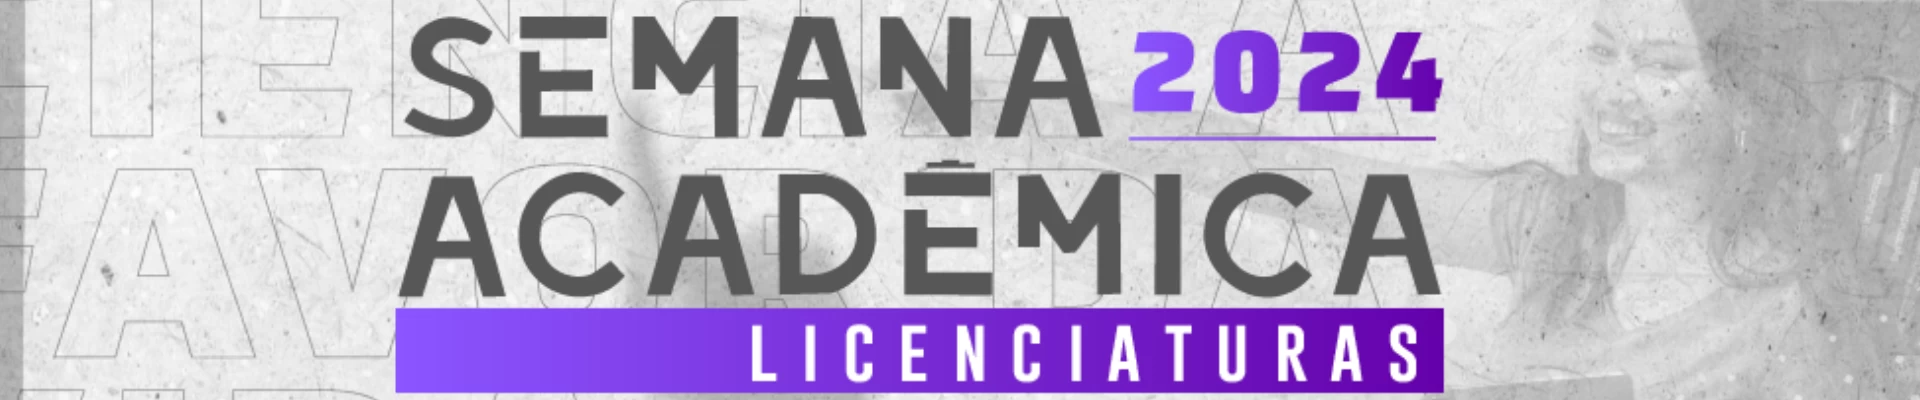 SEMANA ACADÊMICA DAS LICENCIATURAS - 2024